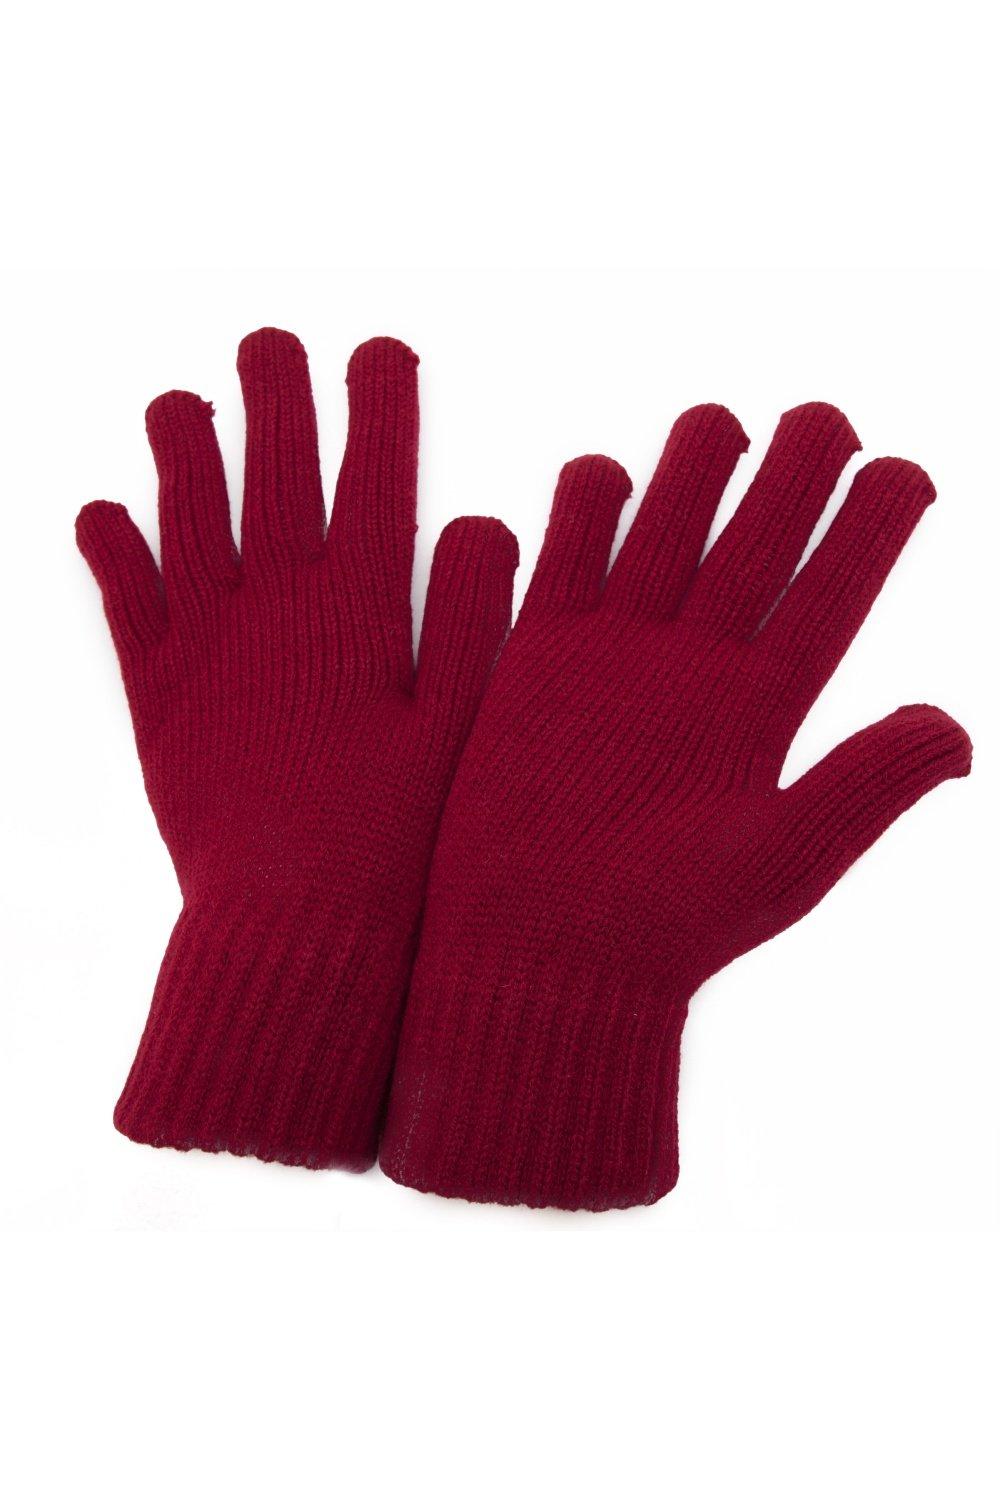 РАСПРОСТРАНЕНИЕ - Зимние перчатки Universal Textiles, красный